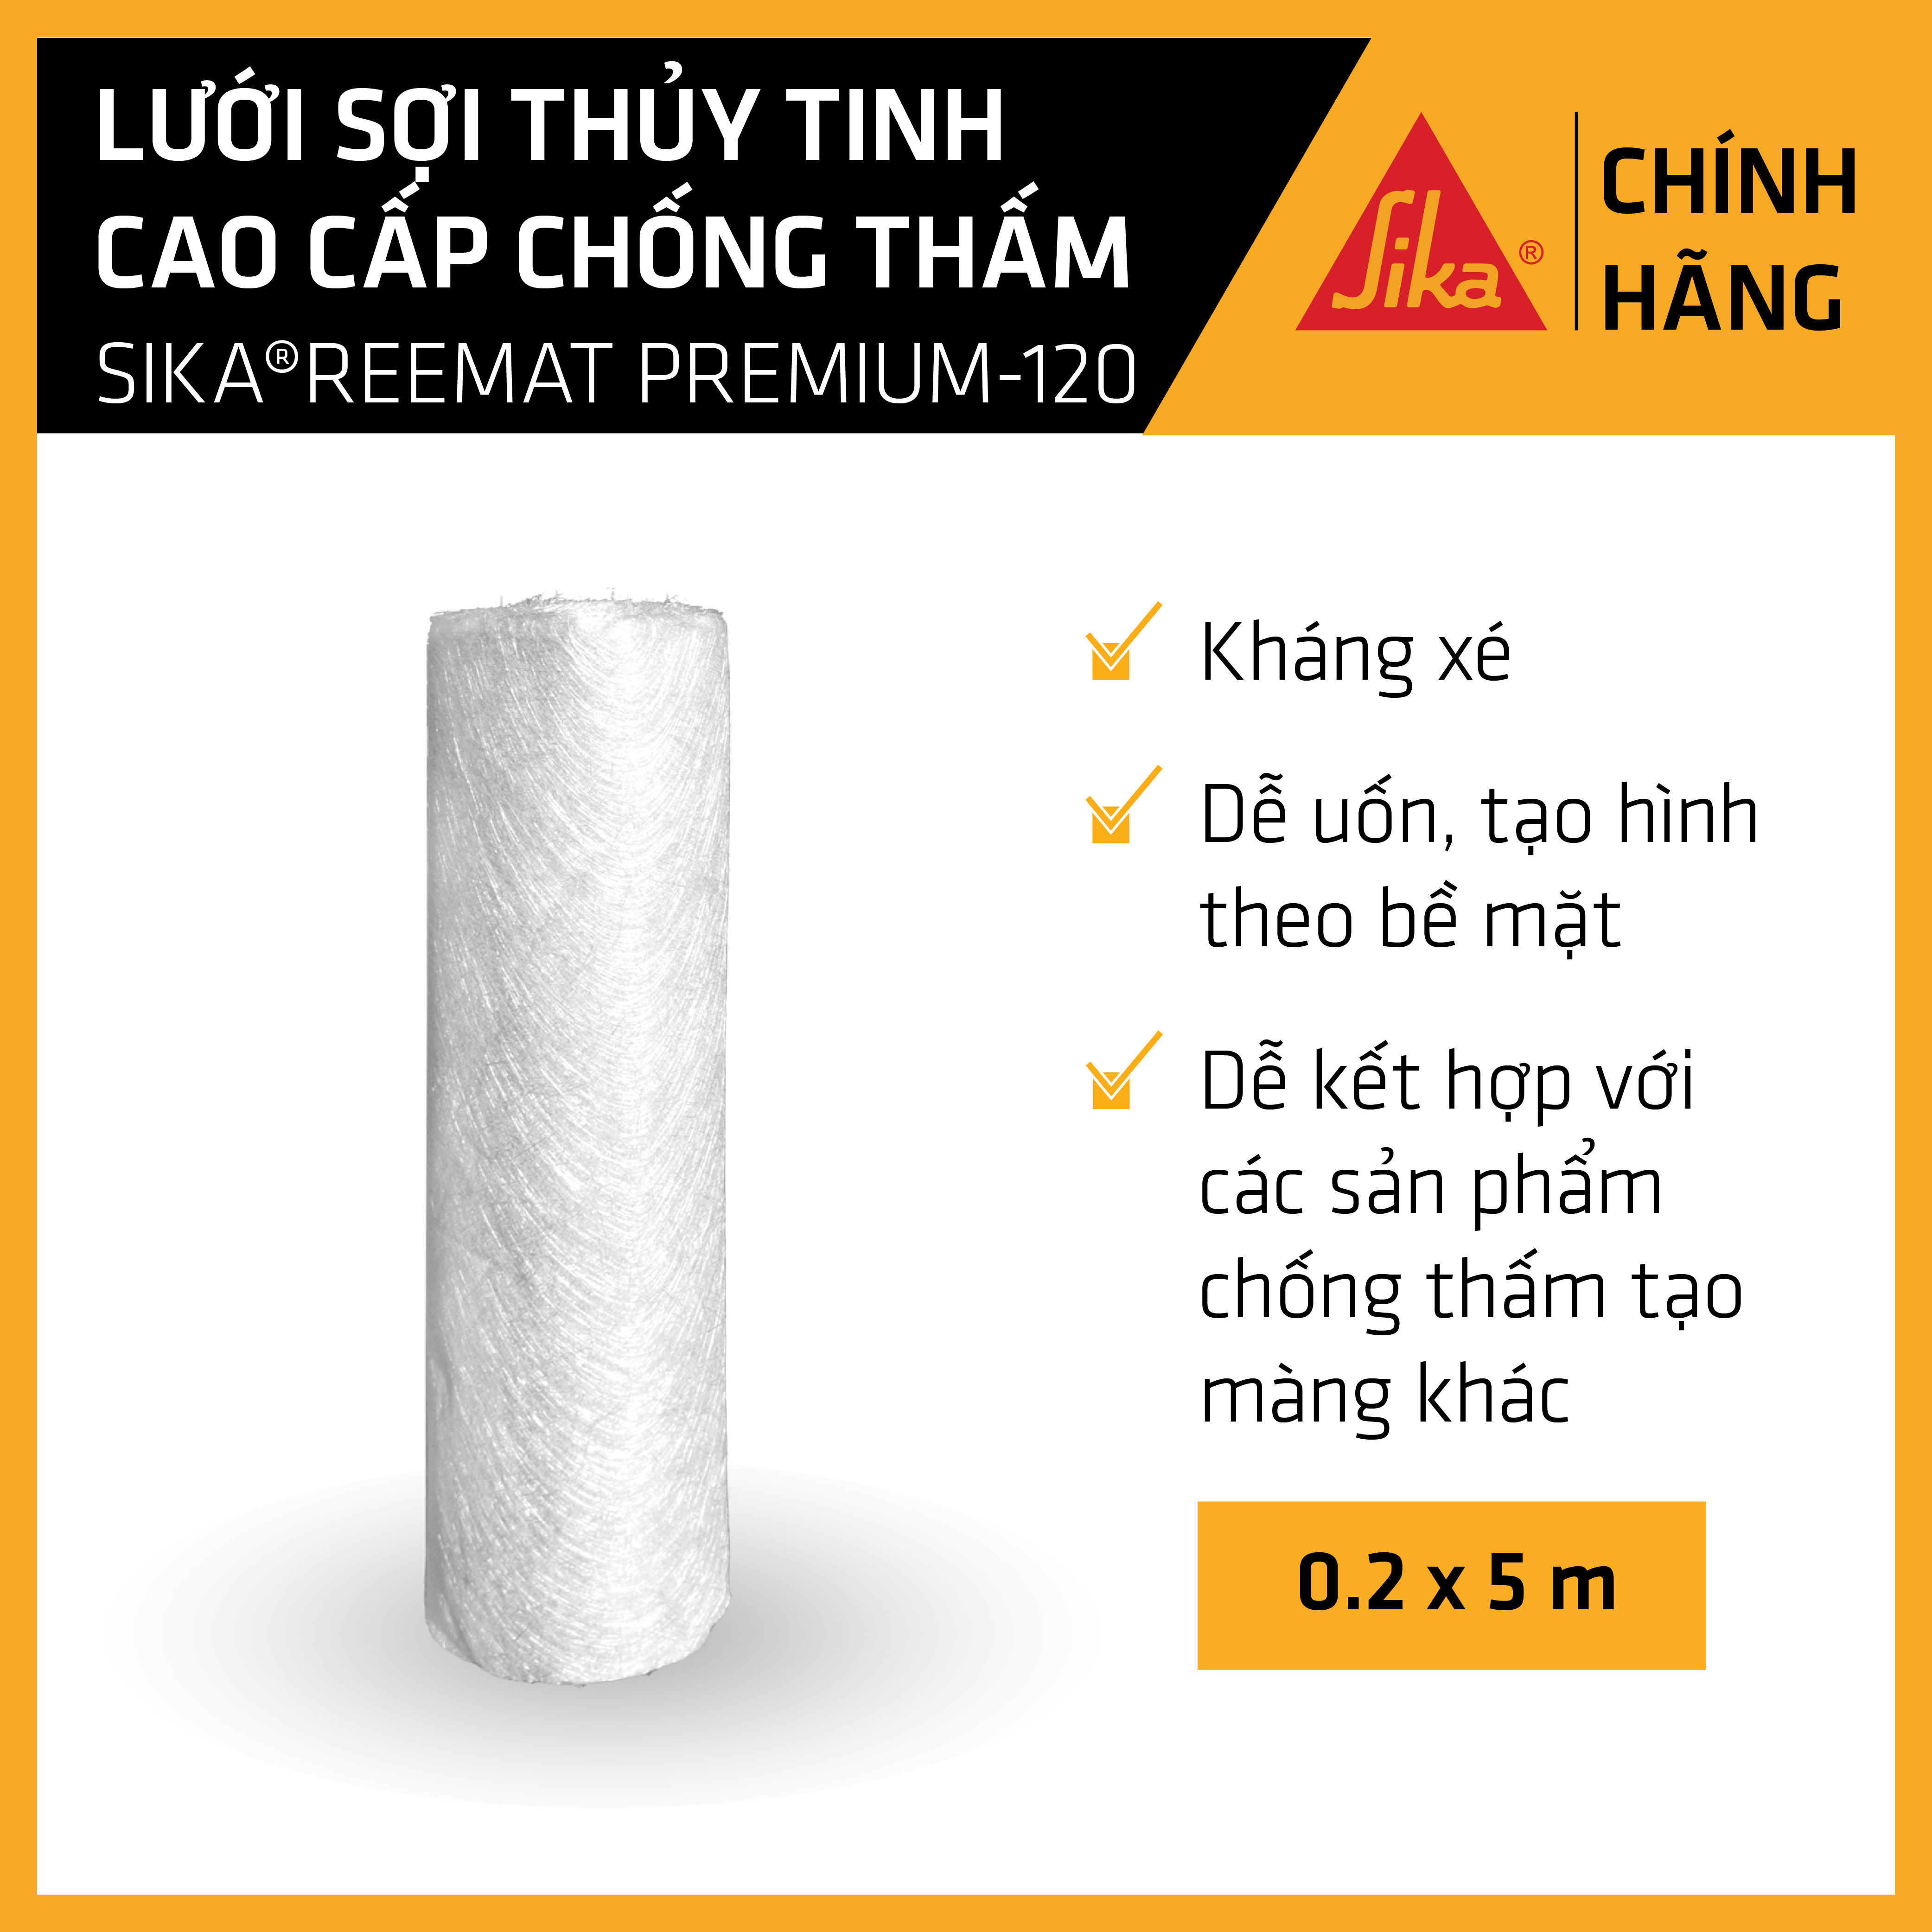 Sika - Lưới sợi thủy tinh cao cấp chống thấm Sika ® Reemat Premium 120 0.2x5m